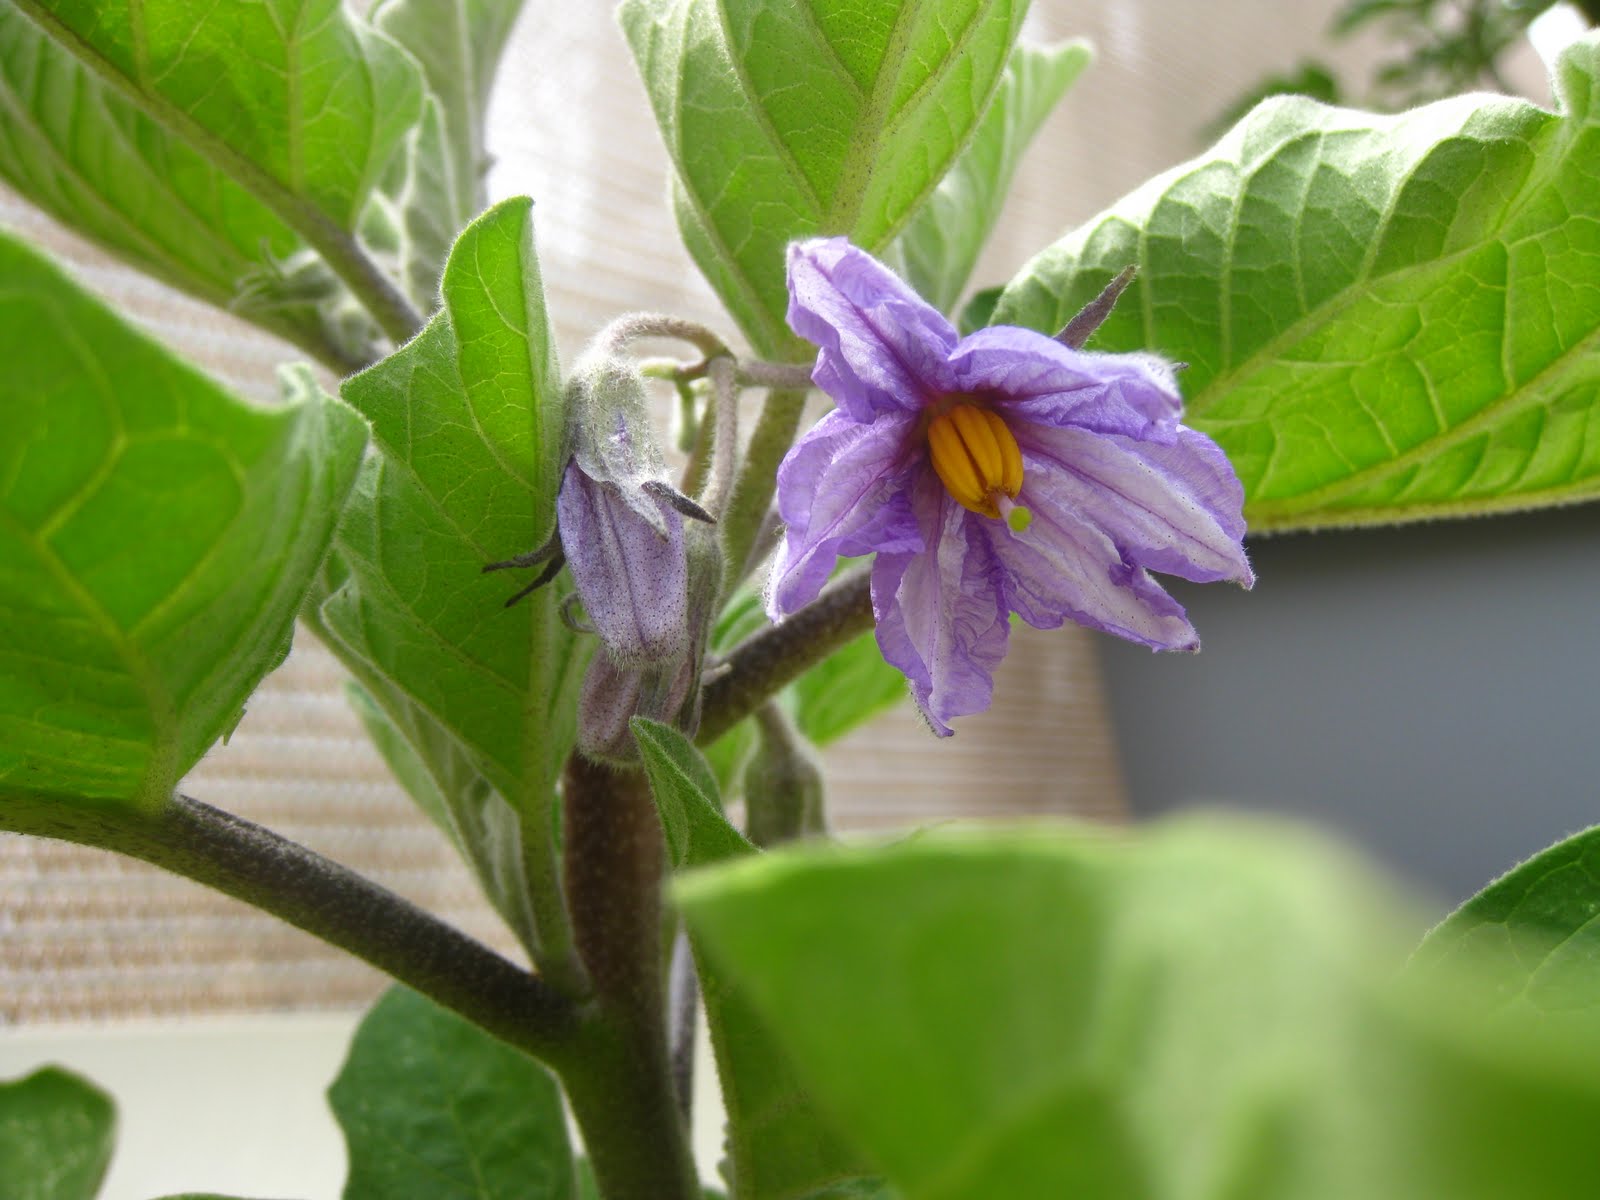 Charm city balcony garden: Fairytale Eggplant flowers